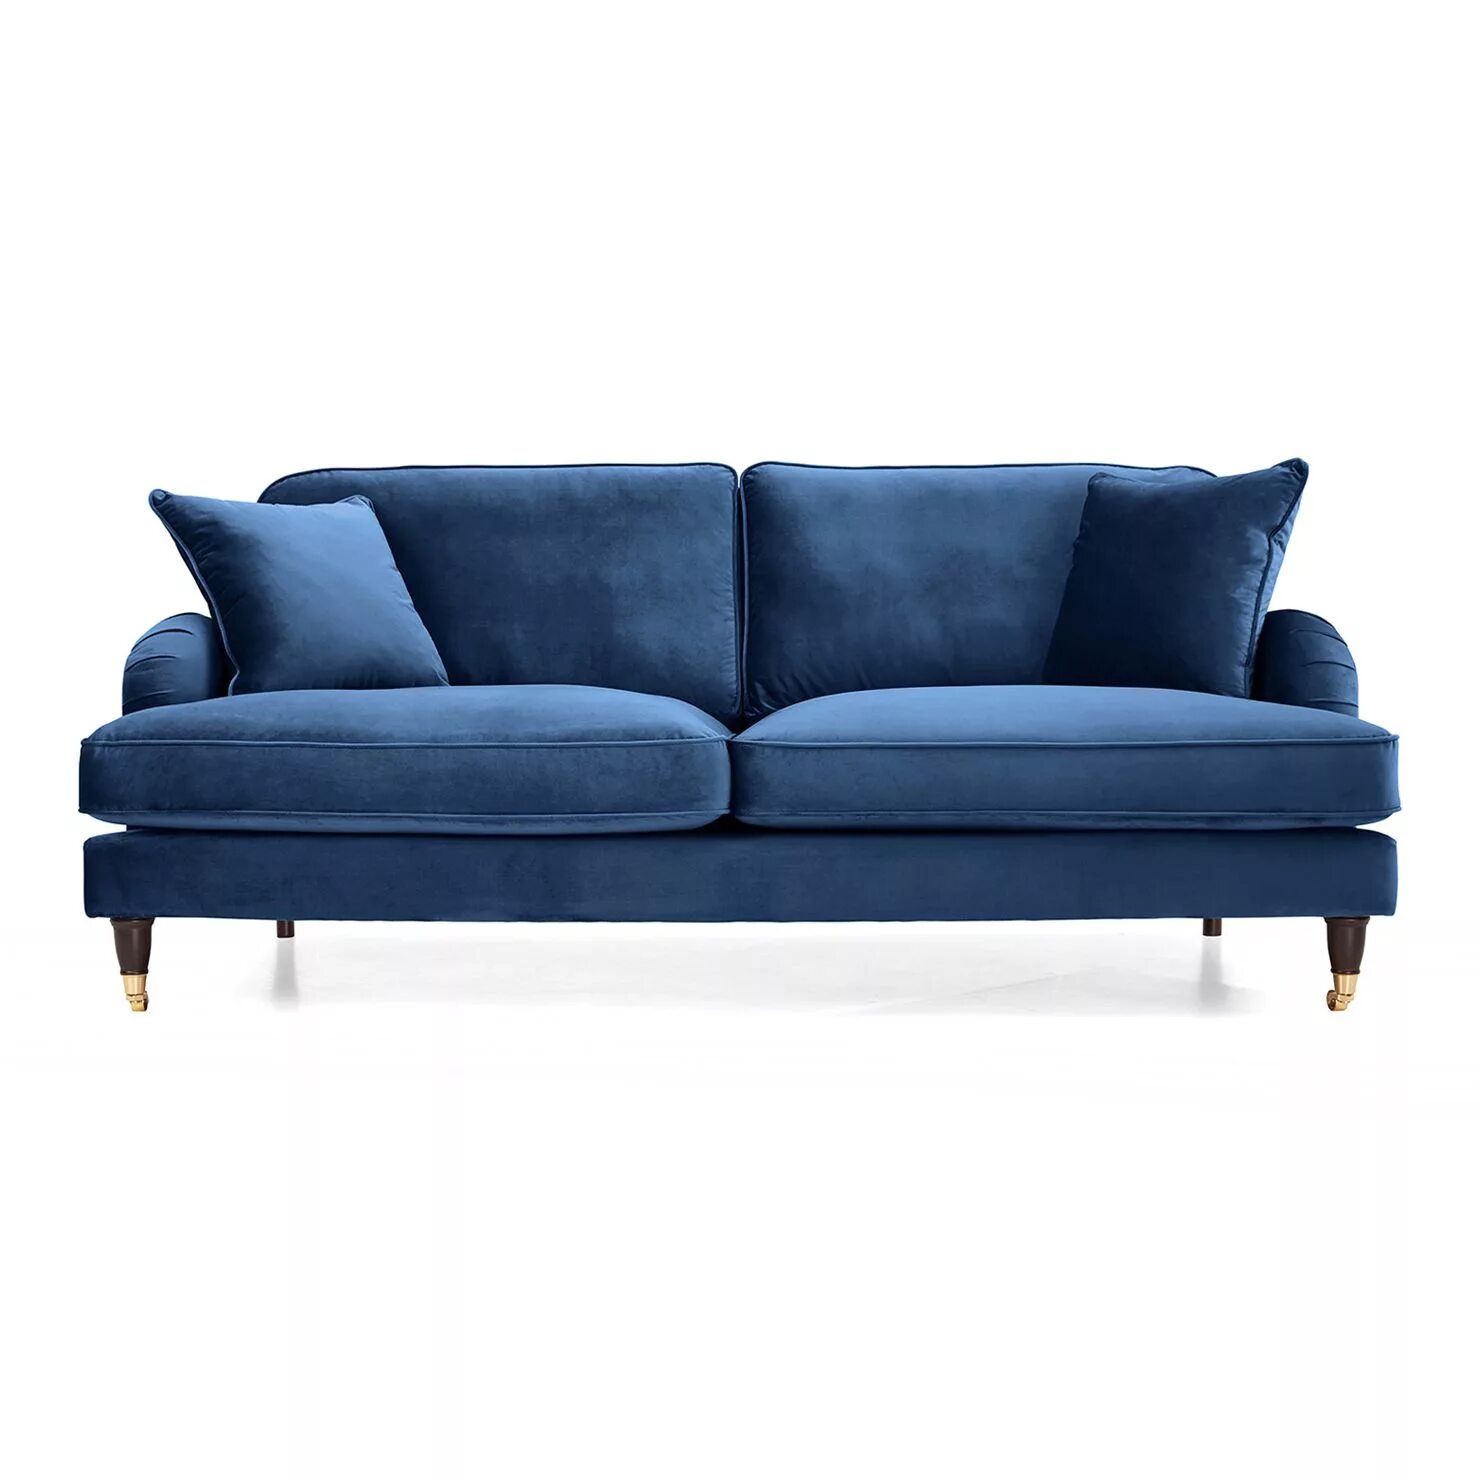 Синий диван. Patterdale Velvet 2 Seater Sofa. Голубой диван. Синий диван современный.